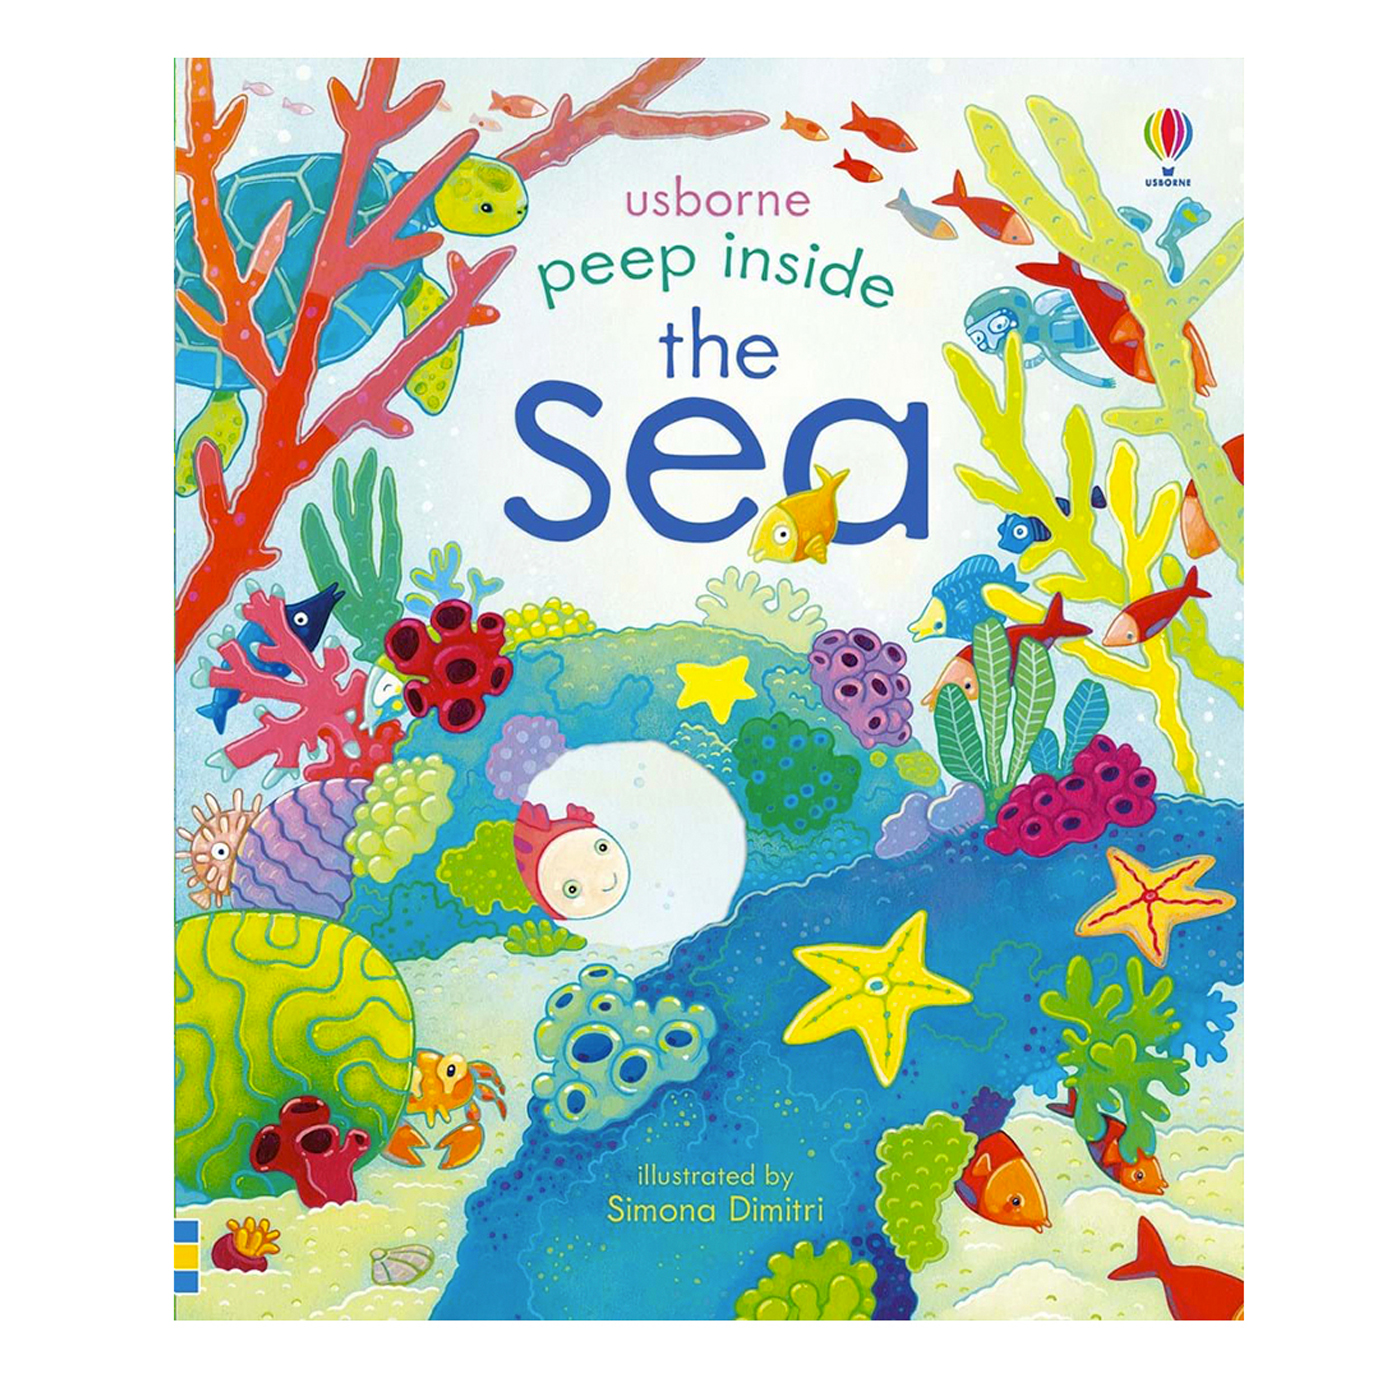  Peep inside: the Sea